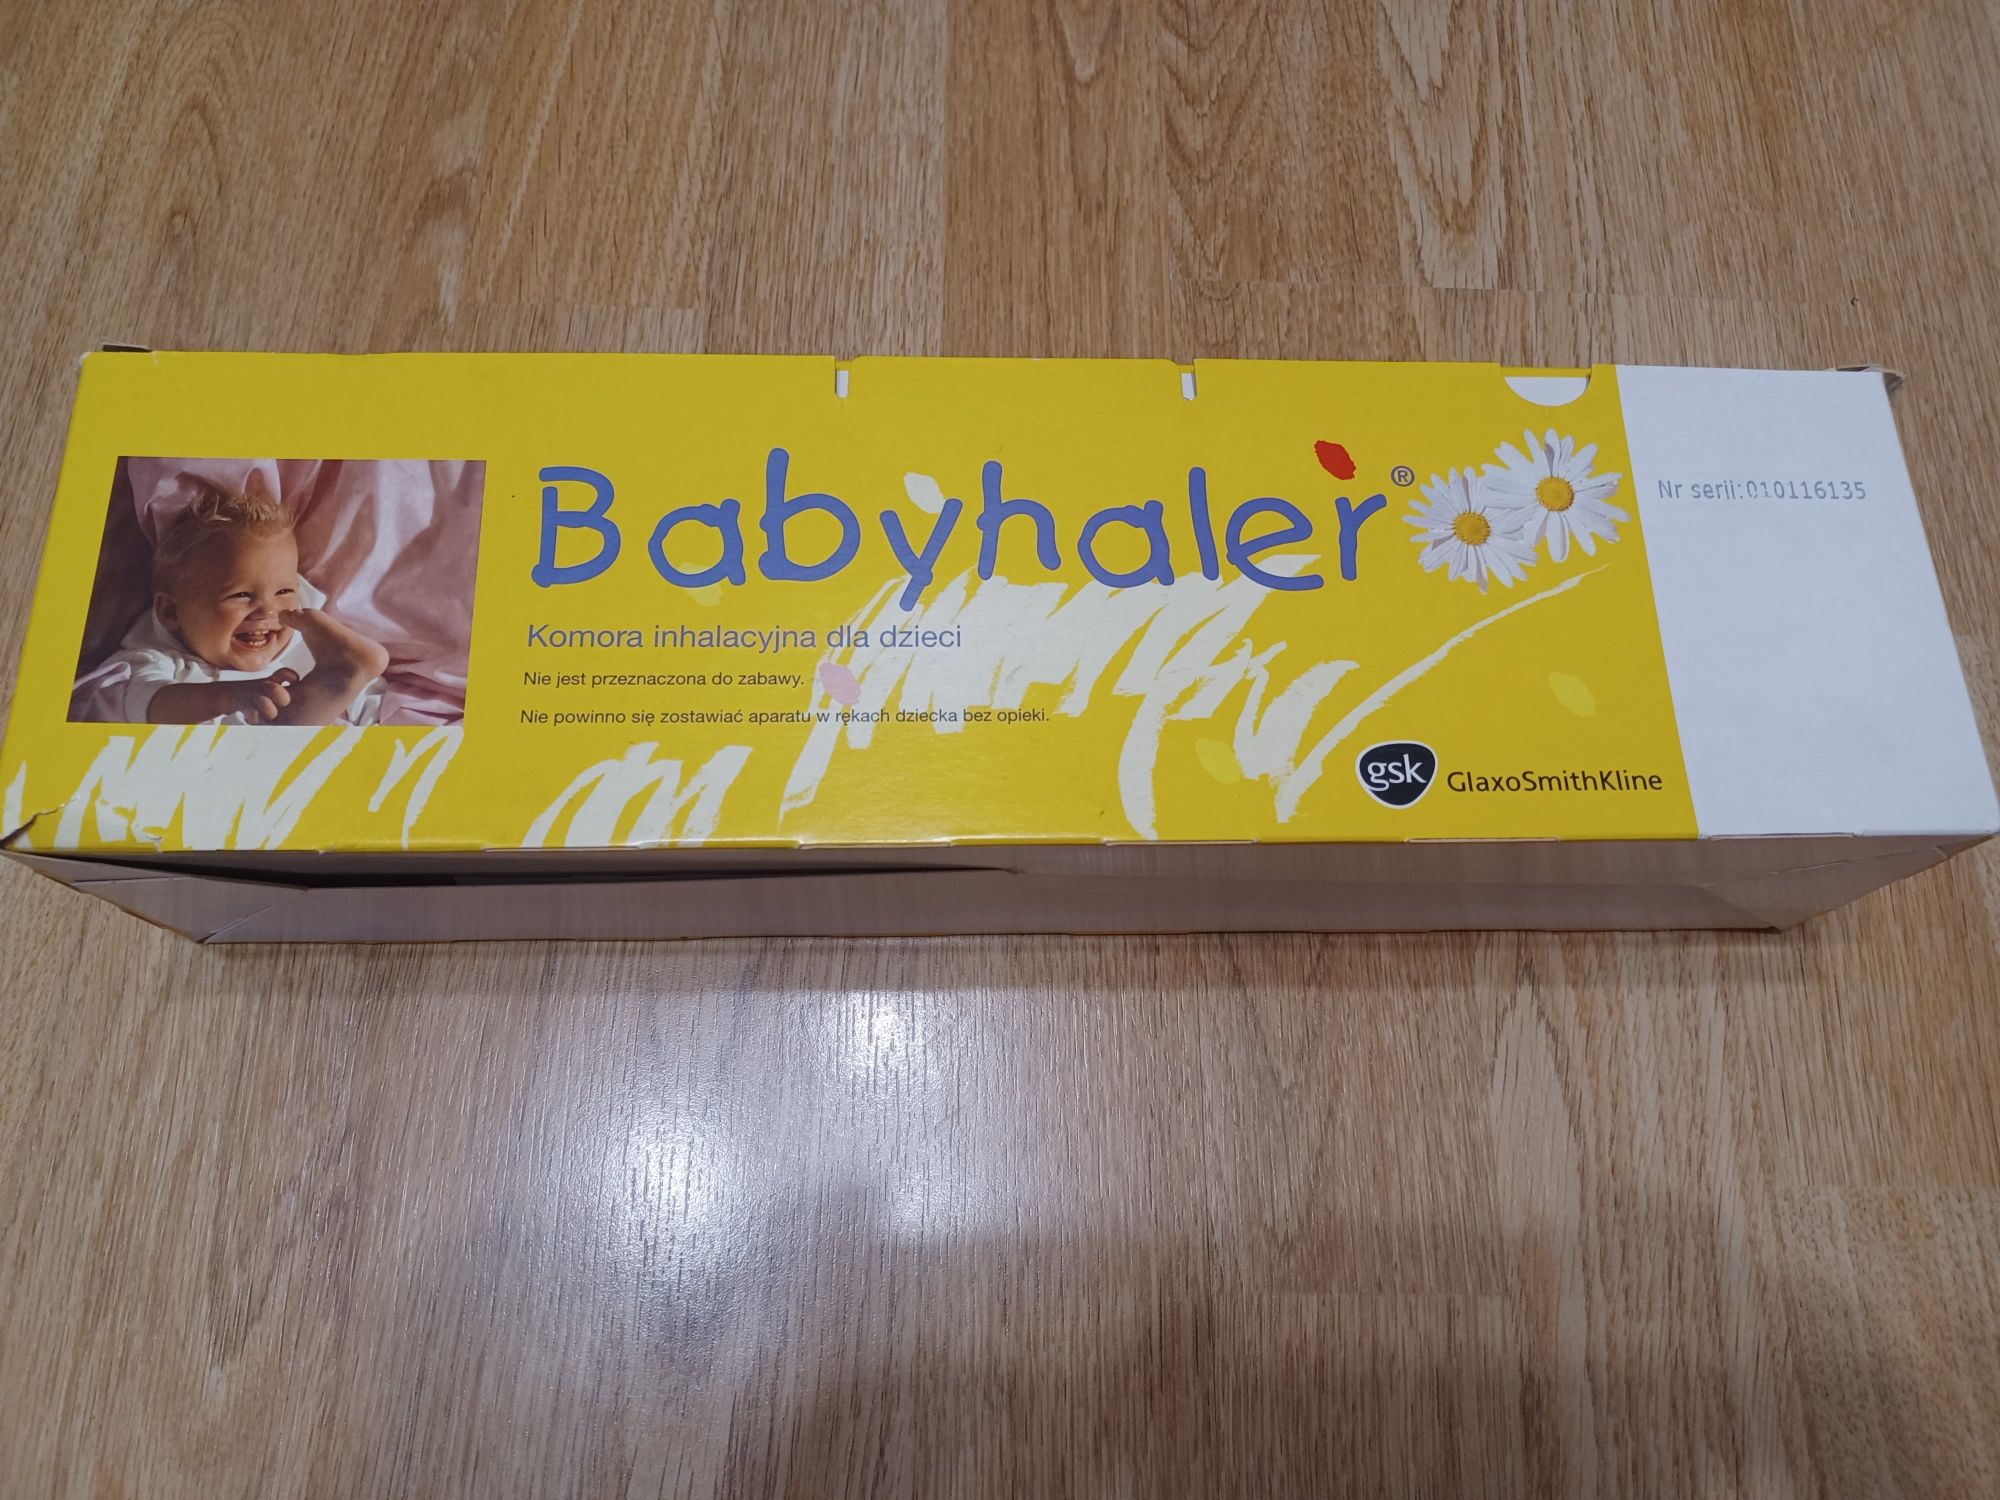 Babyhaler GlaxoSmithKline komora inhalacyjna dla dzieci